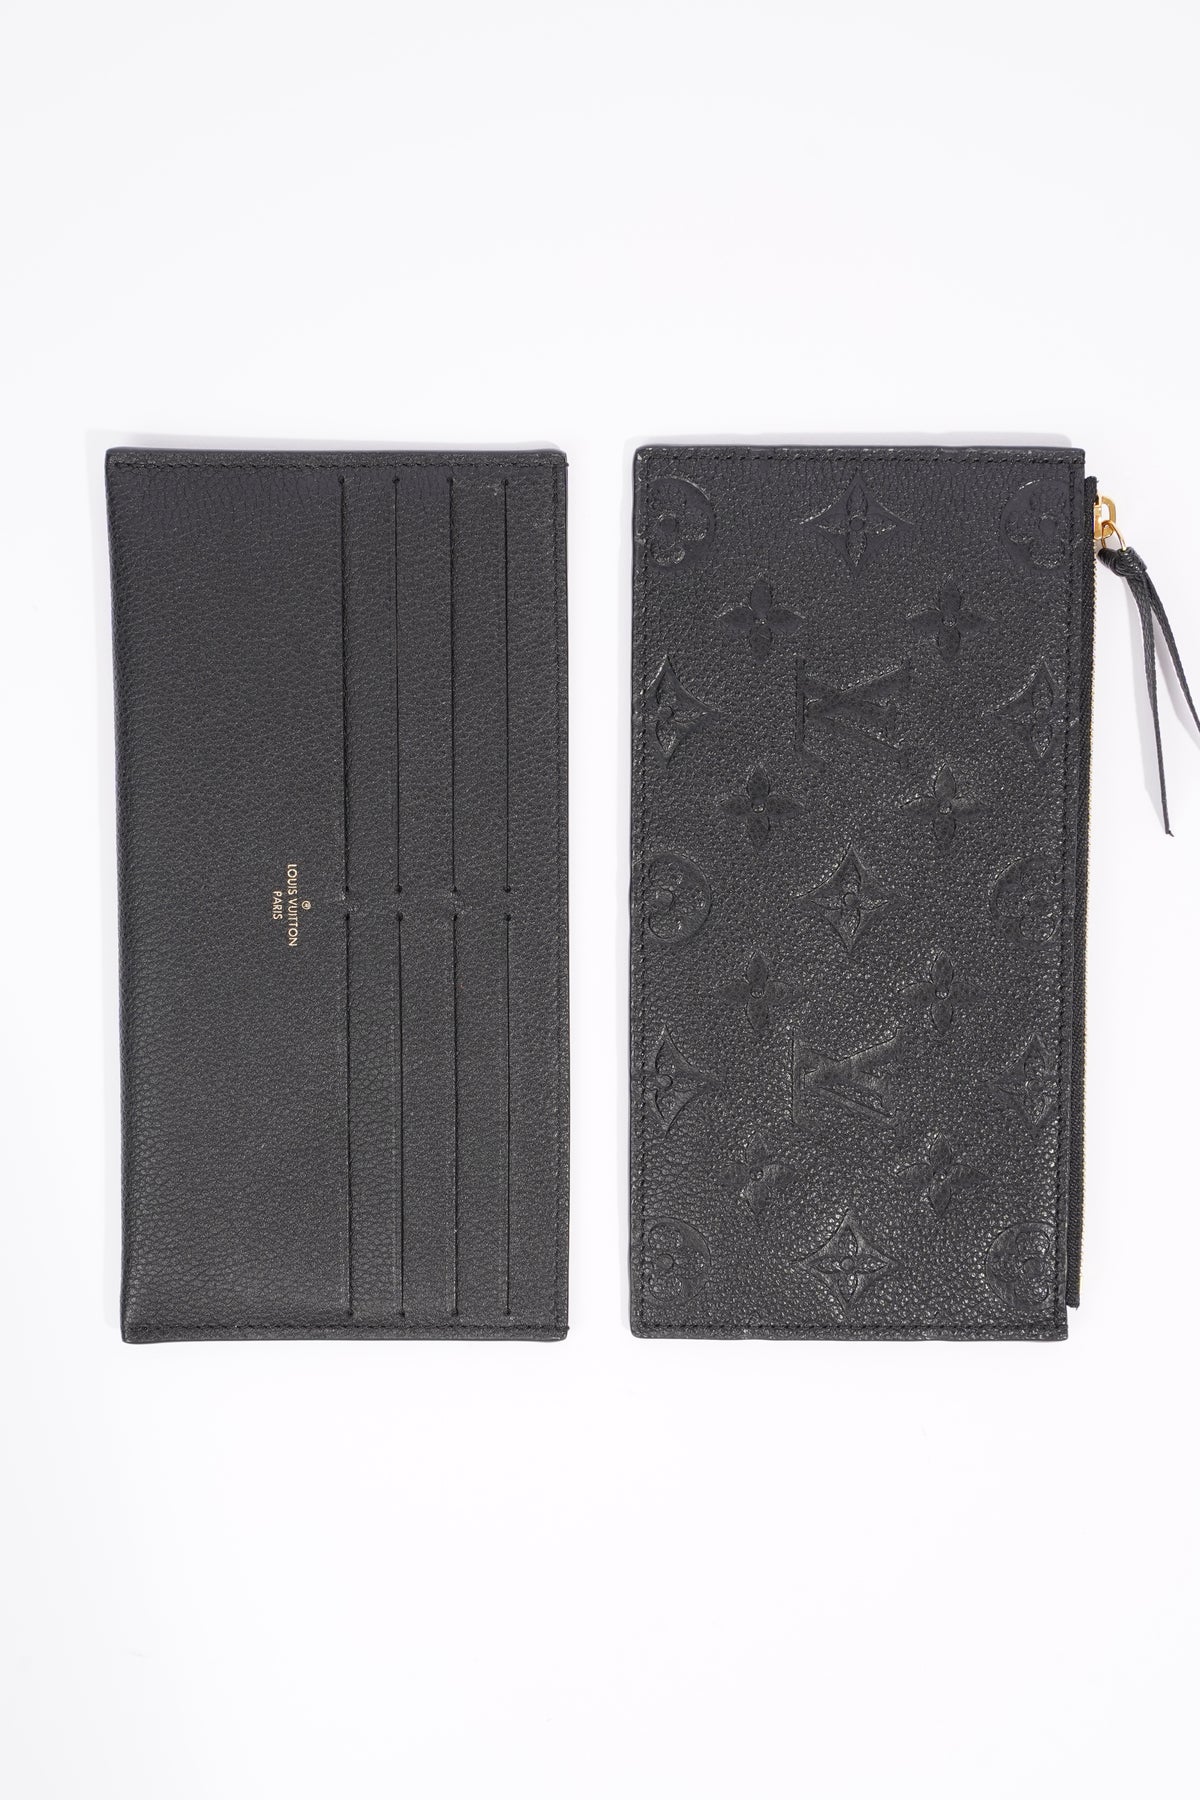 Louis Vuitton Pochette Felicie Empreinte Mono Leather – Luxe Collective